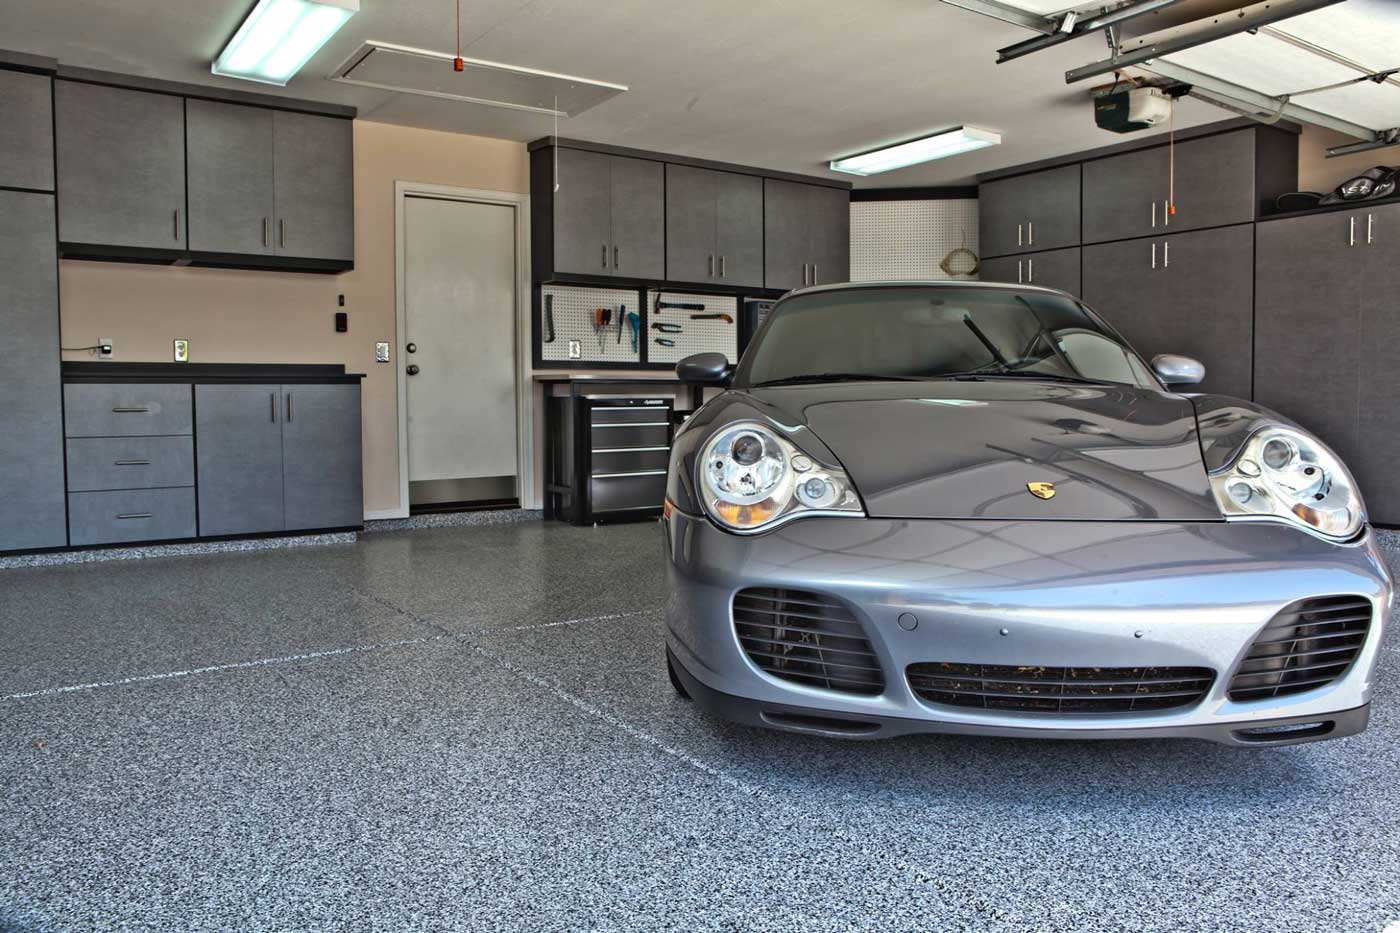 Porsche 911 in a matching grey garage